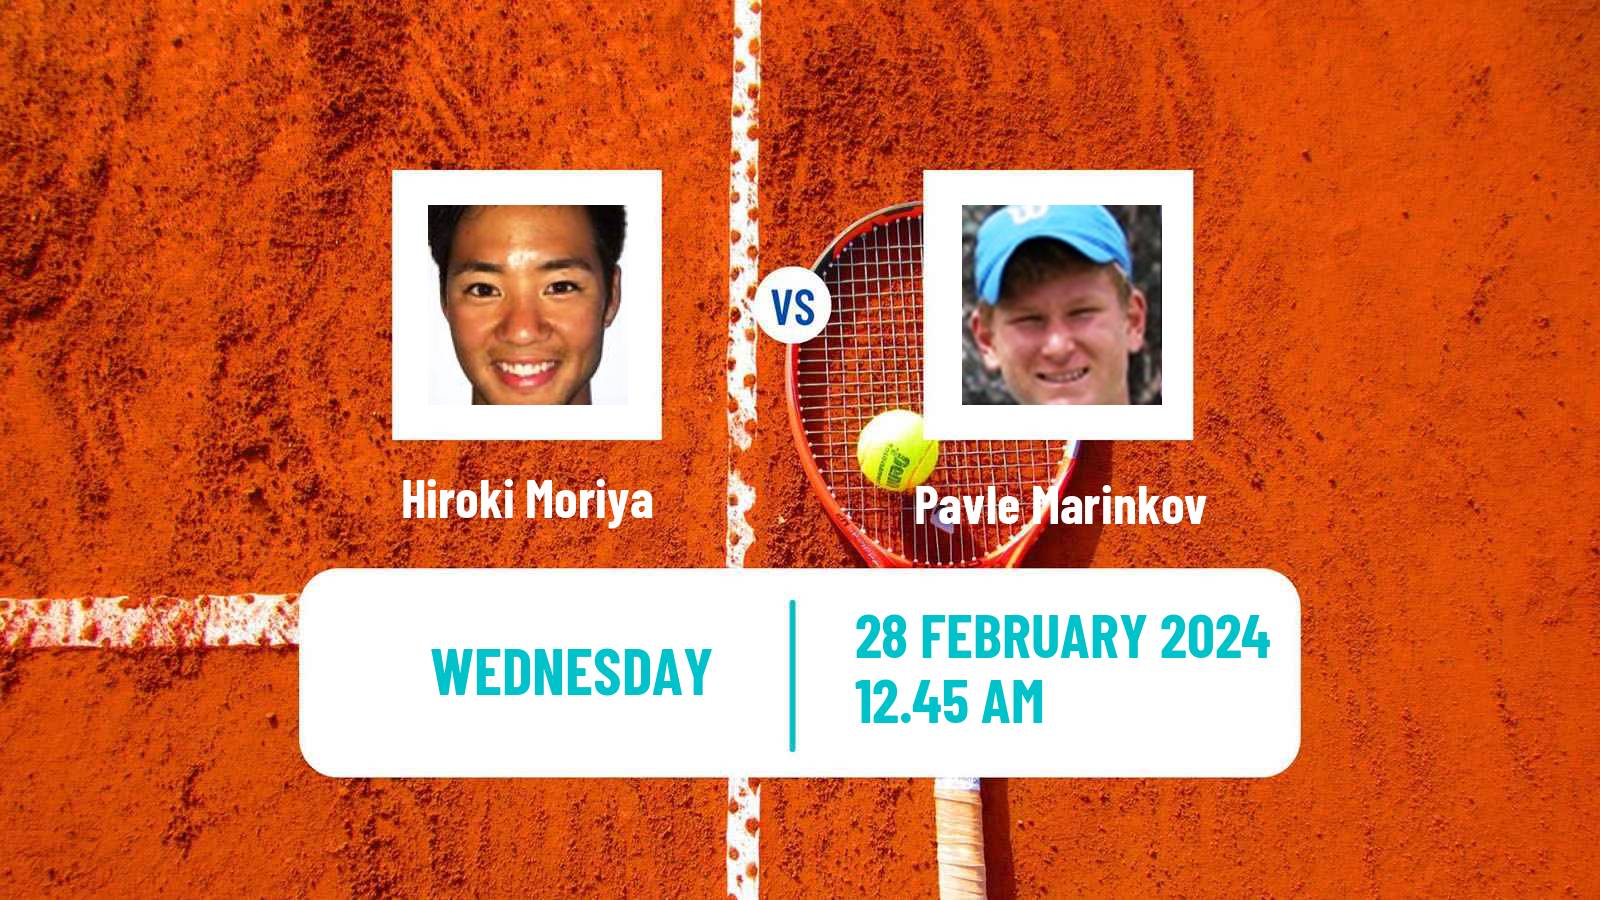 Tennis ITF M25 Traralgon 3 Men Hiroki Moriya - Pavle Marinkov